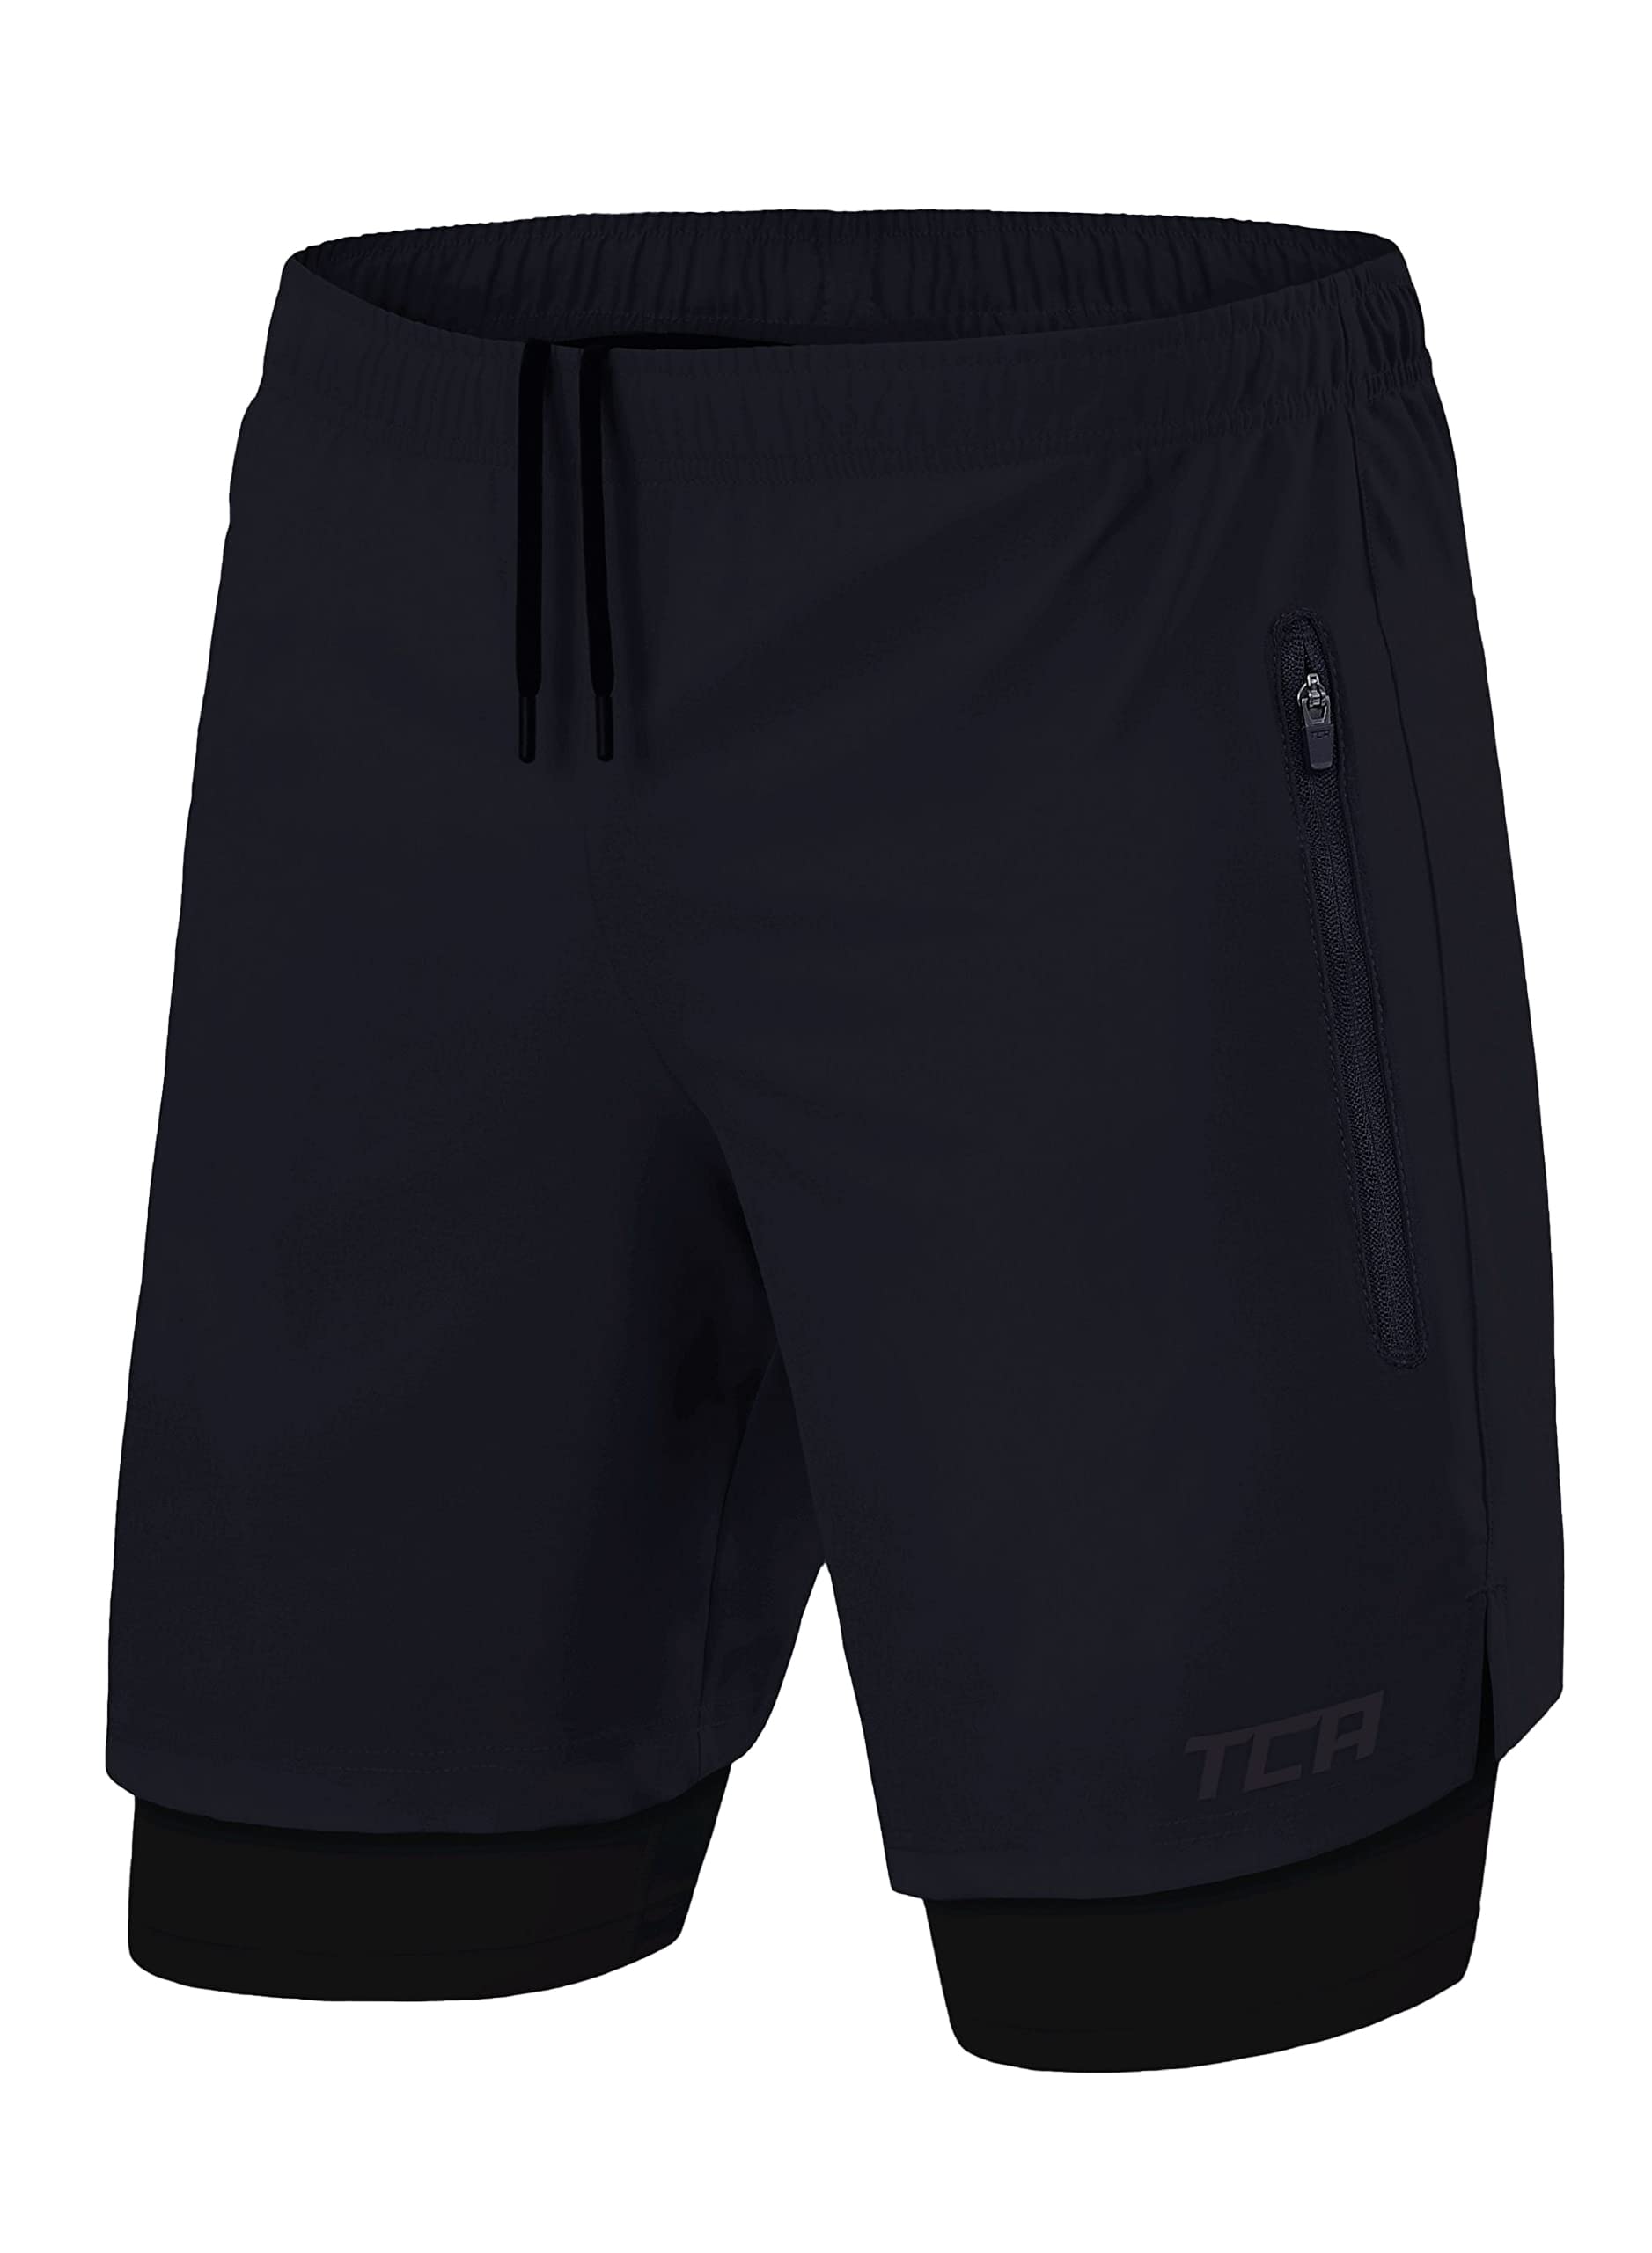 TCA Ultra Laufhose Herren 2 in 1 Kurze Sporthose Trainingsshorts Laufshorts mit integrierter Kompressionshose und Reißverschlussfach - Dunkelblau/Schwarz (2X reißverschlusstasche), XXL